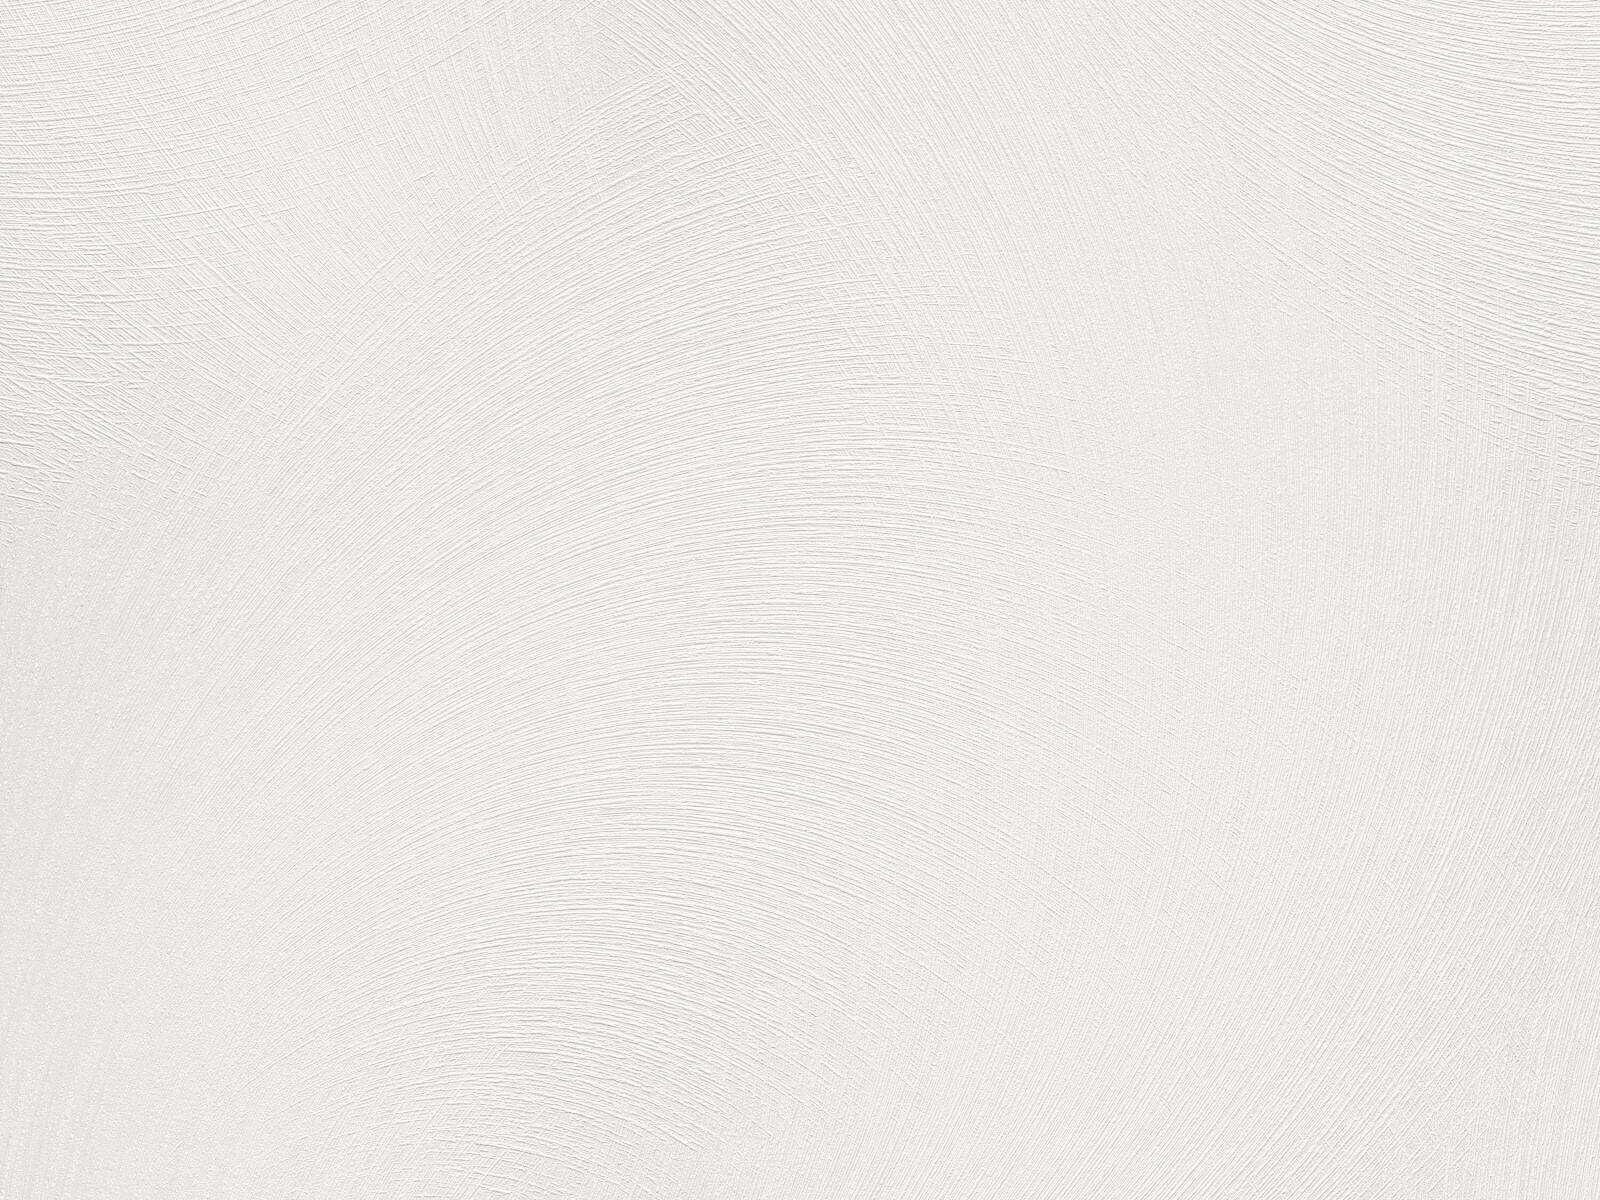 Moderná tapeta s veľkoplošnými čiarami imitujúcimi škrabanú omietku v bielej farbe s 3D lesklým efektom, ER-602166